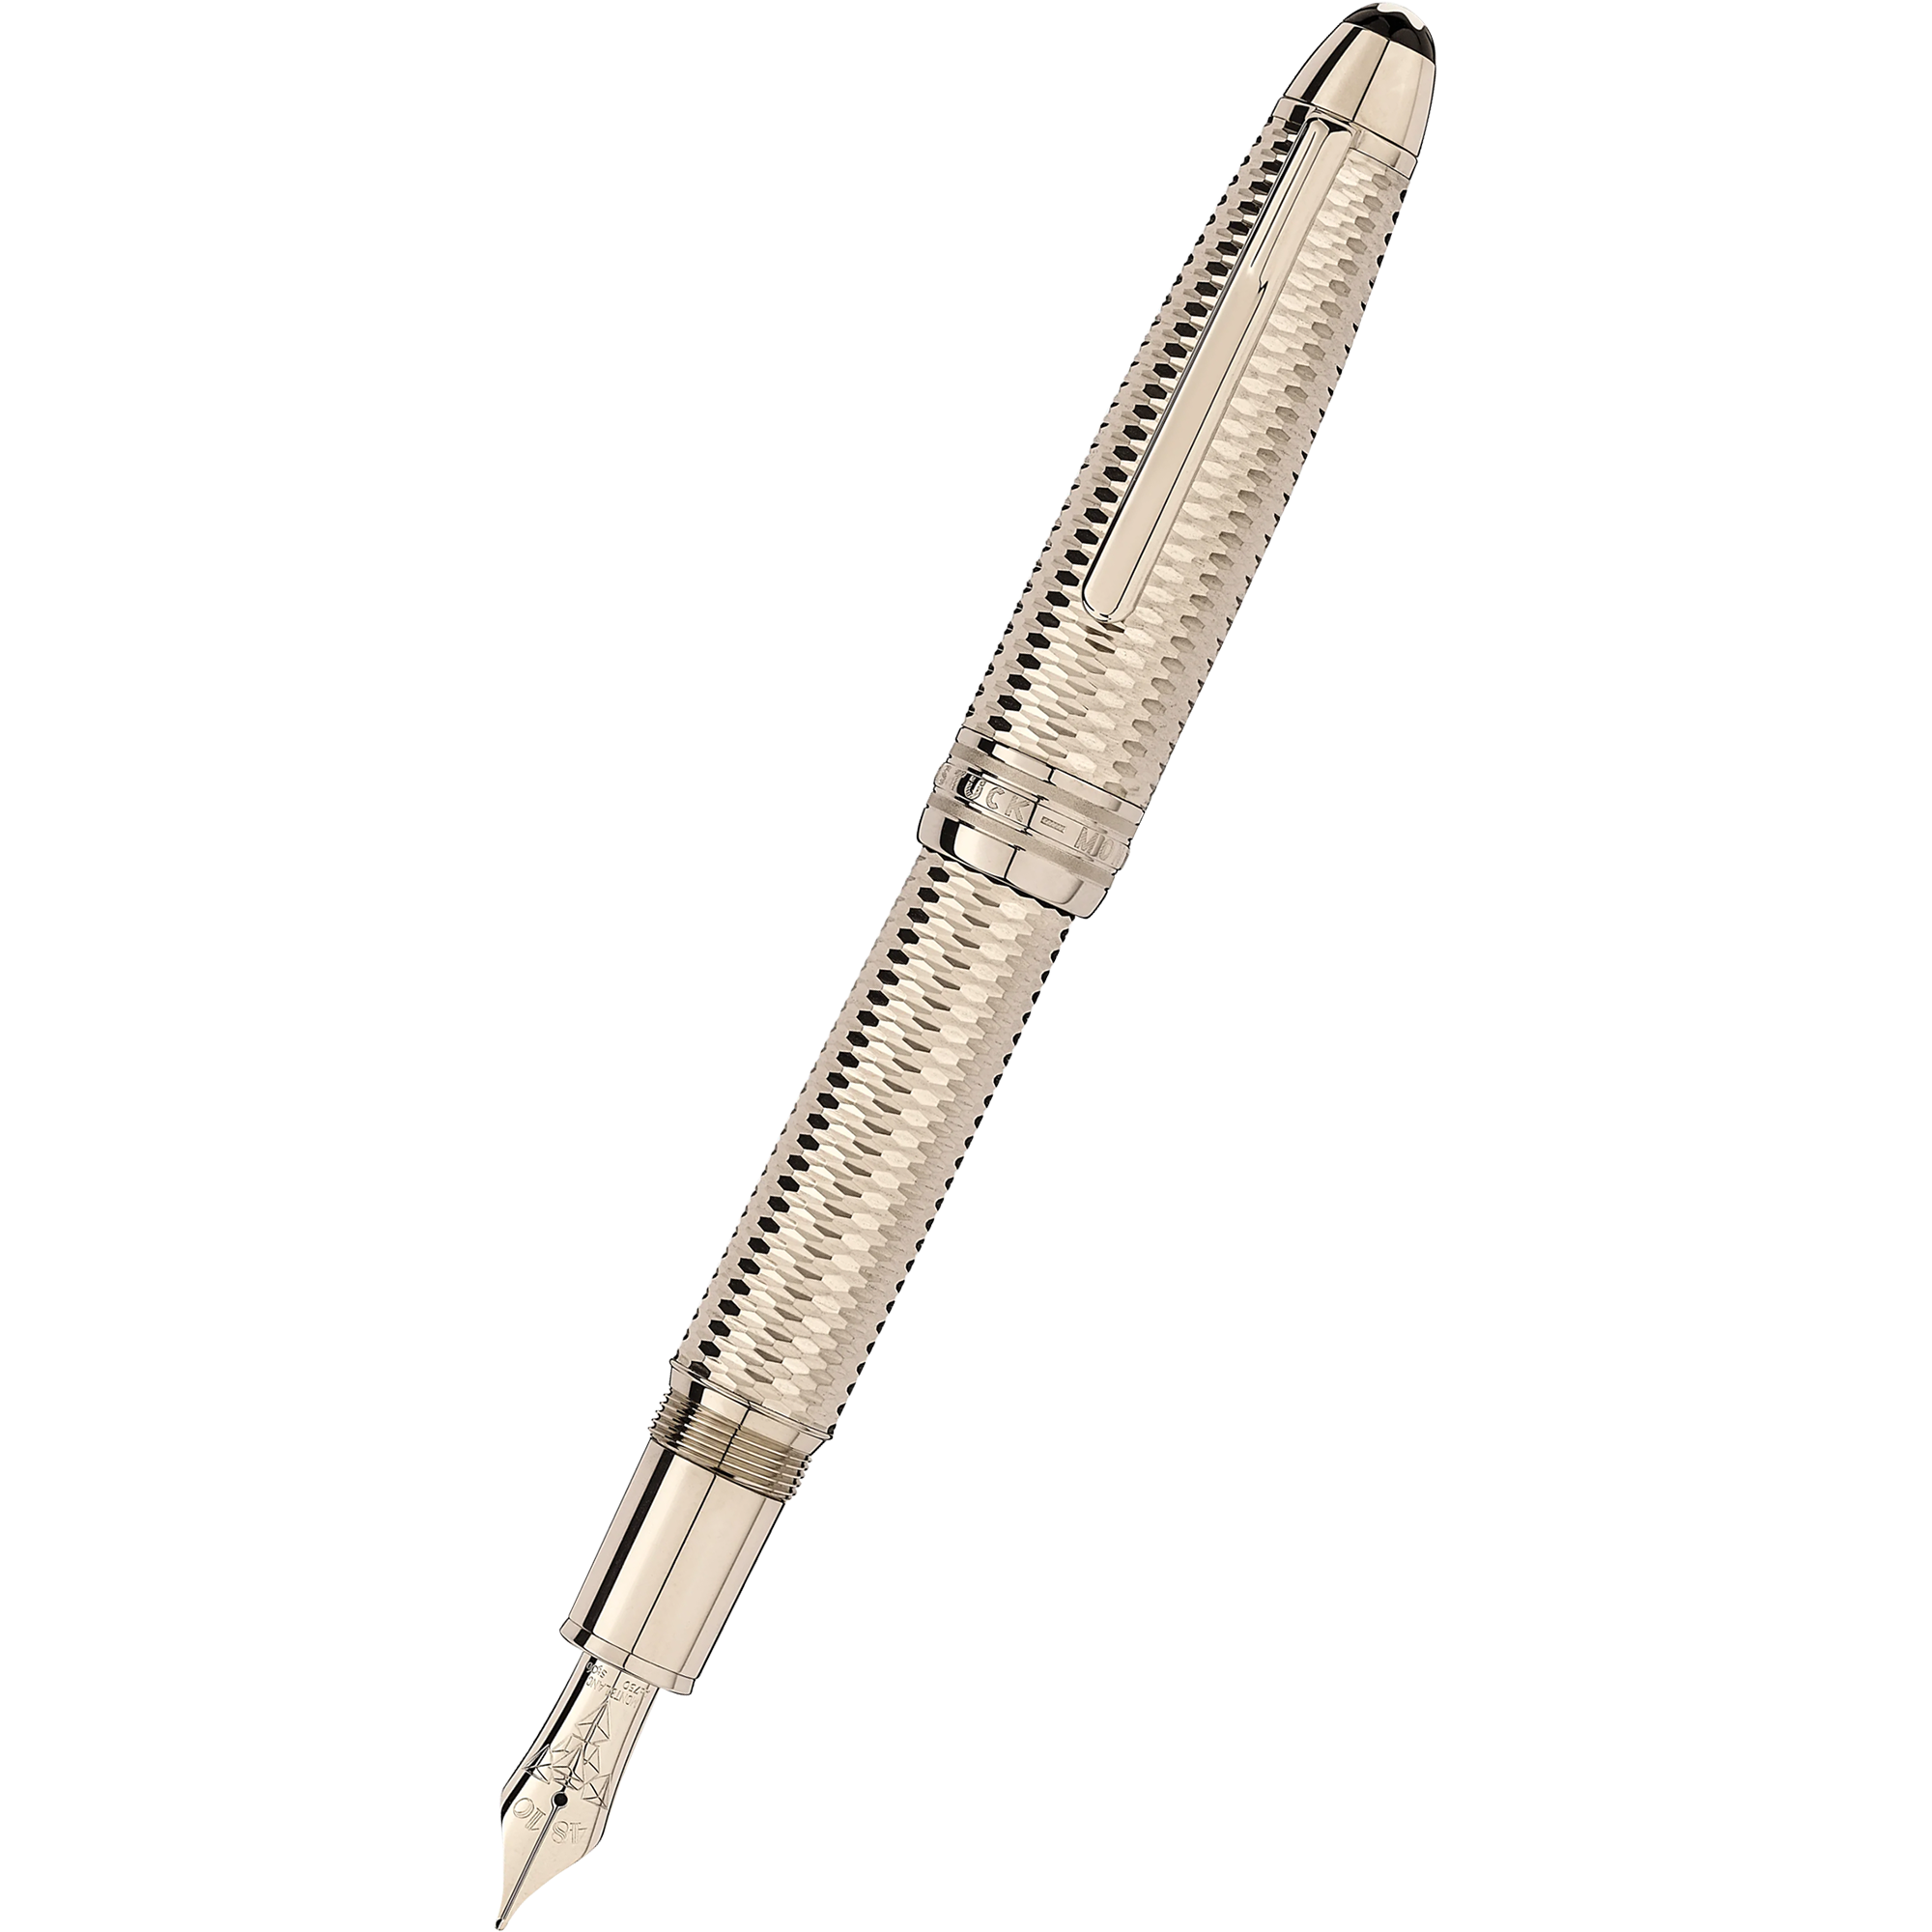 Montblanc Meisterstück Ballpoint Pen - Solitaire White - Platinum